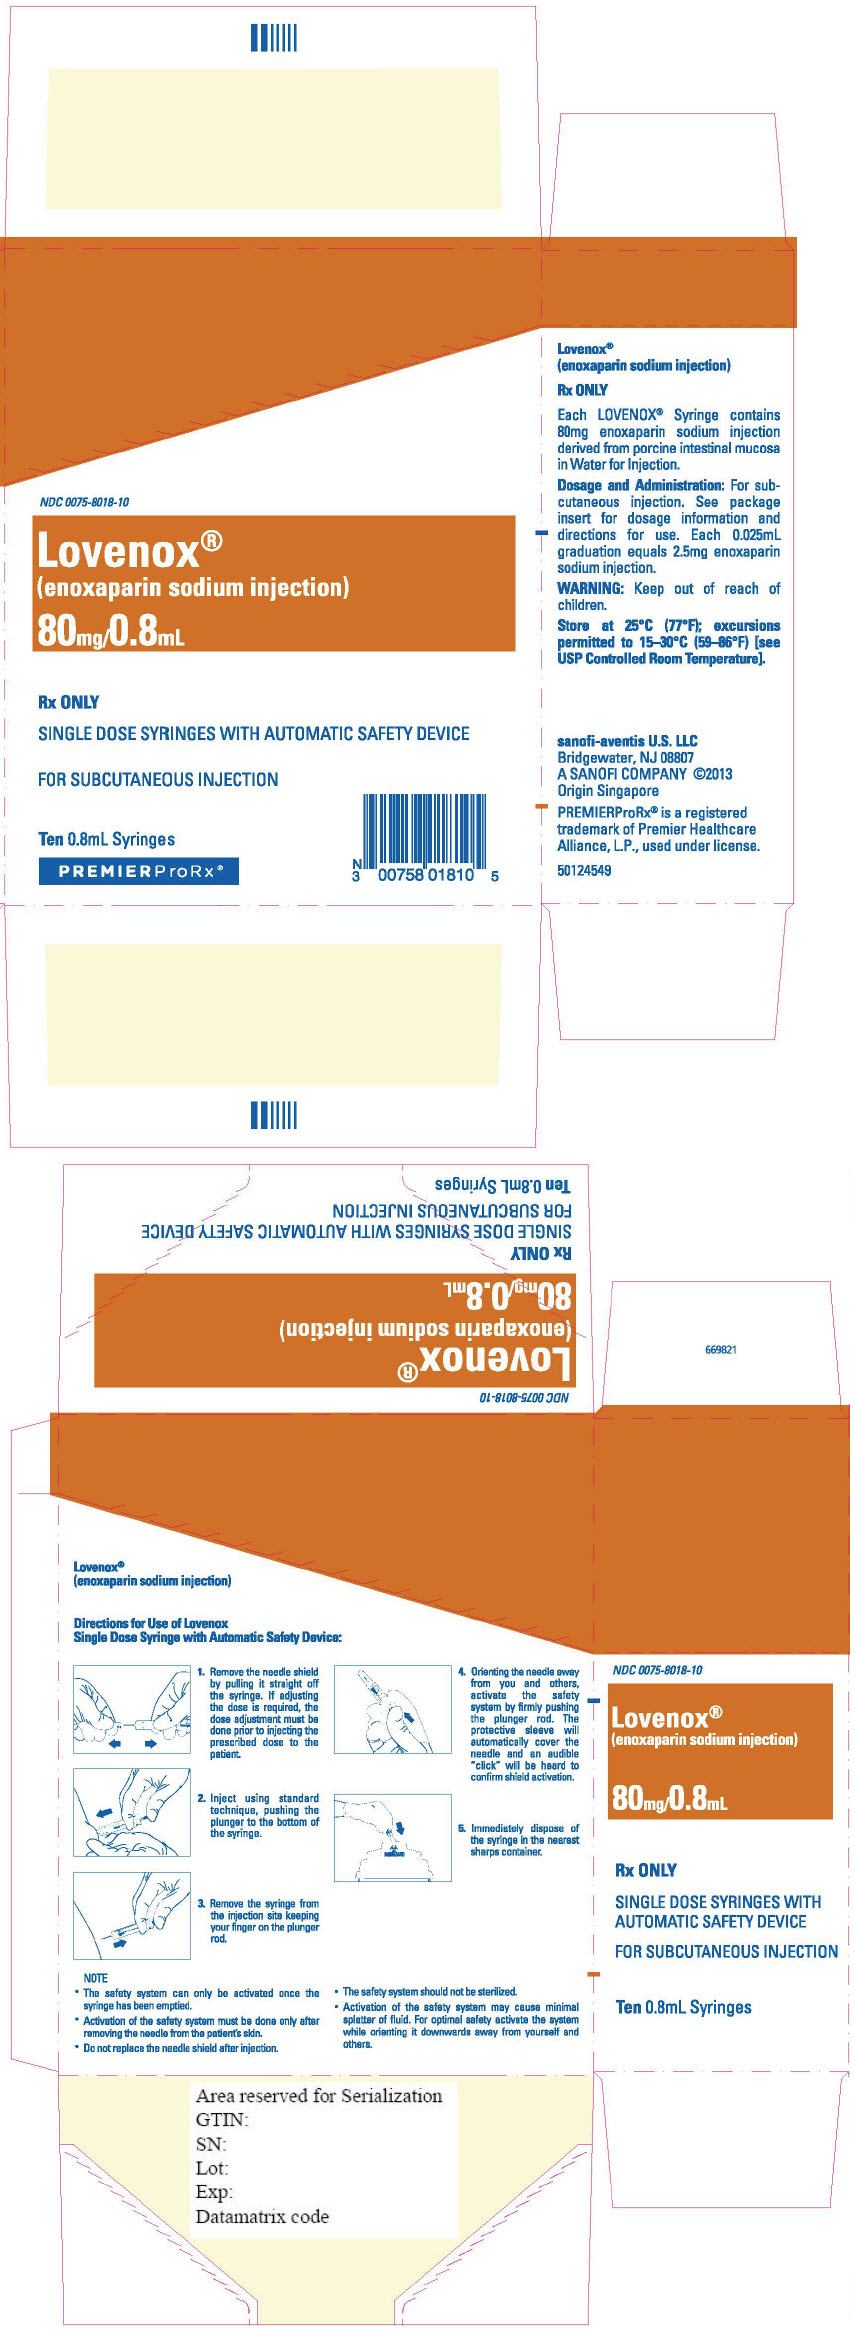 Principal Display Panel - 80 mg/0.8 mL Syringe Blister Pack Carton